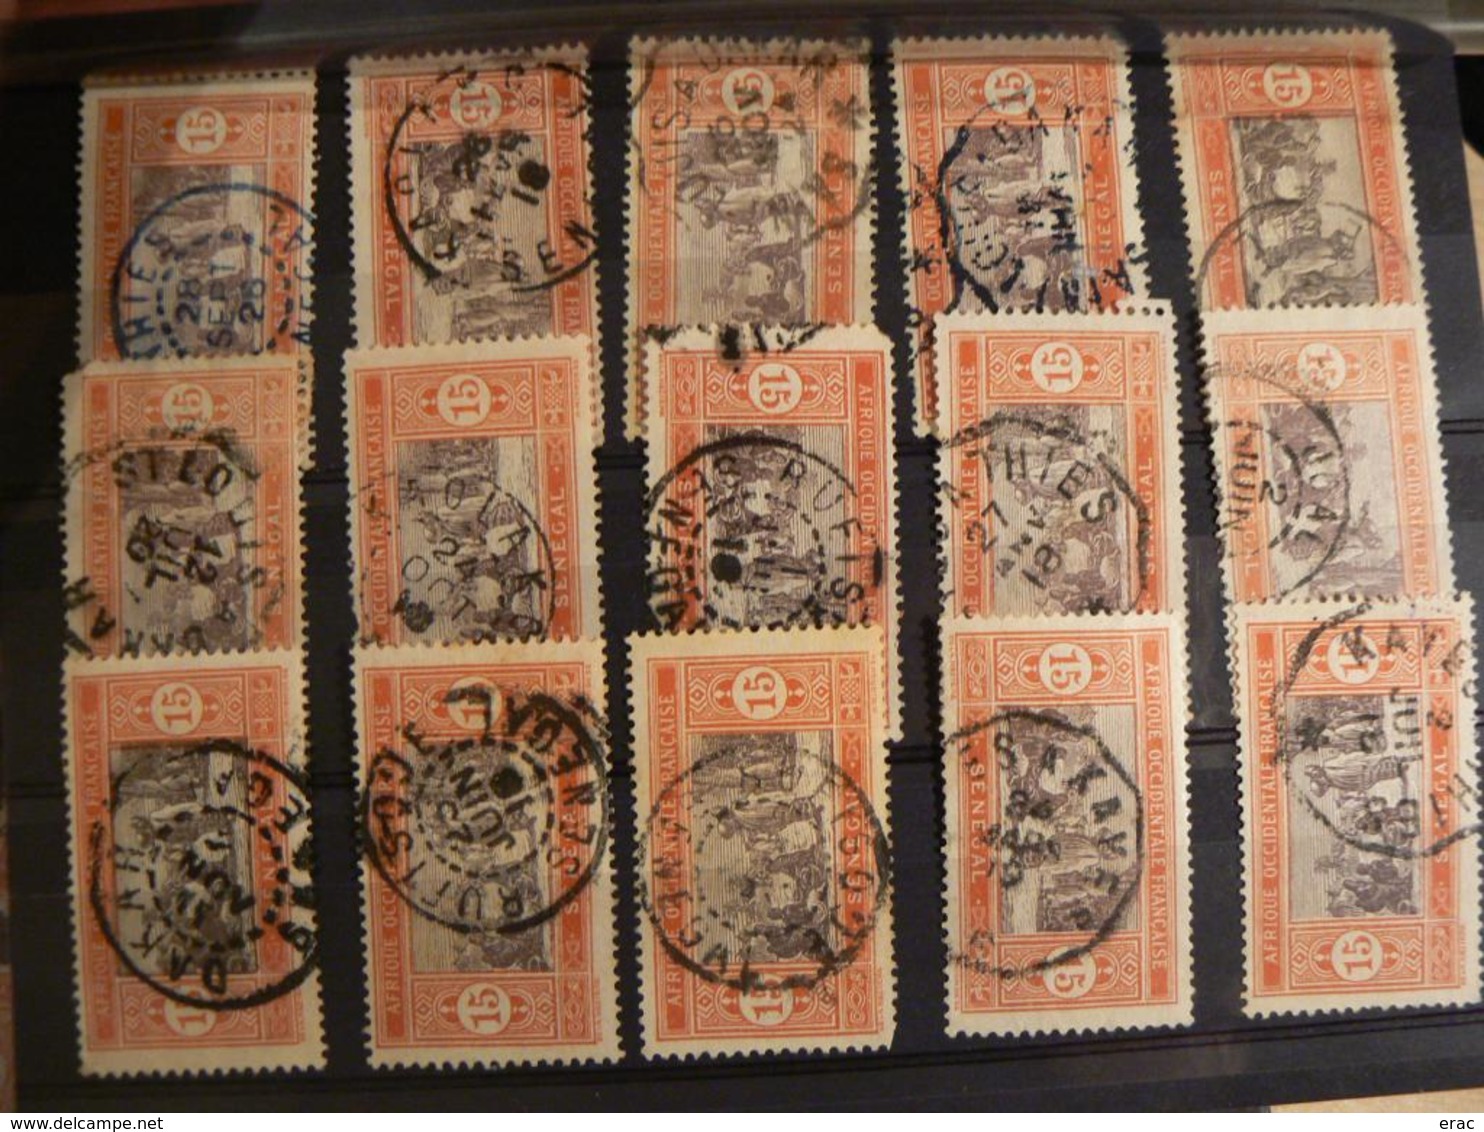 Sénégal - Lot de timbres pour étude de cachets - Début XXème